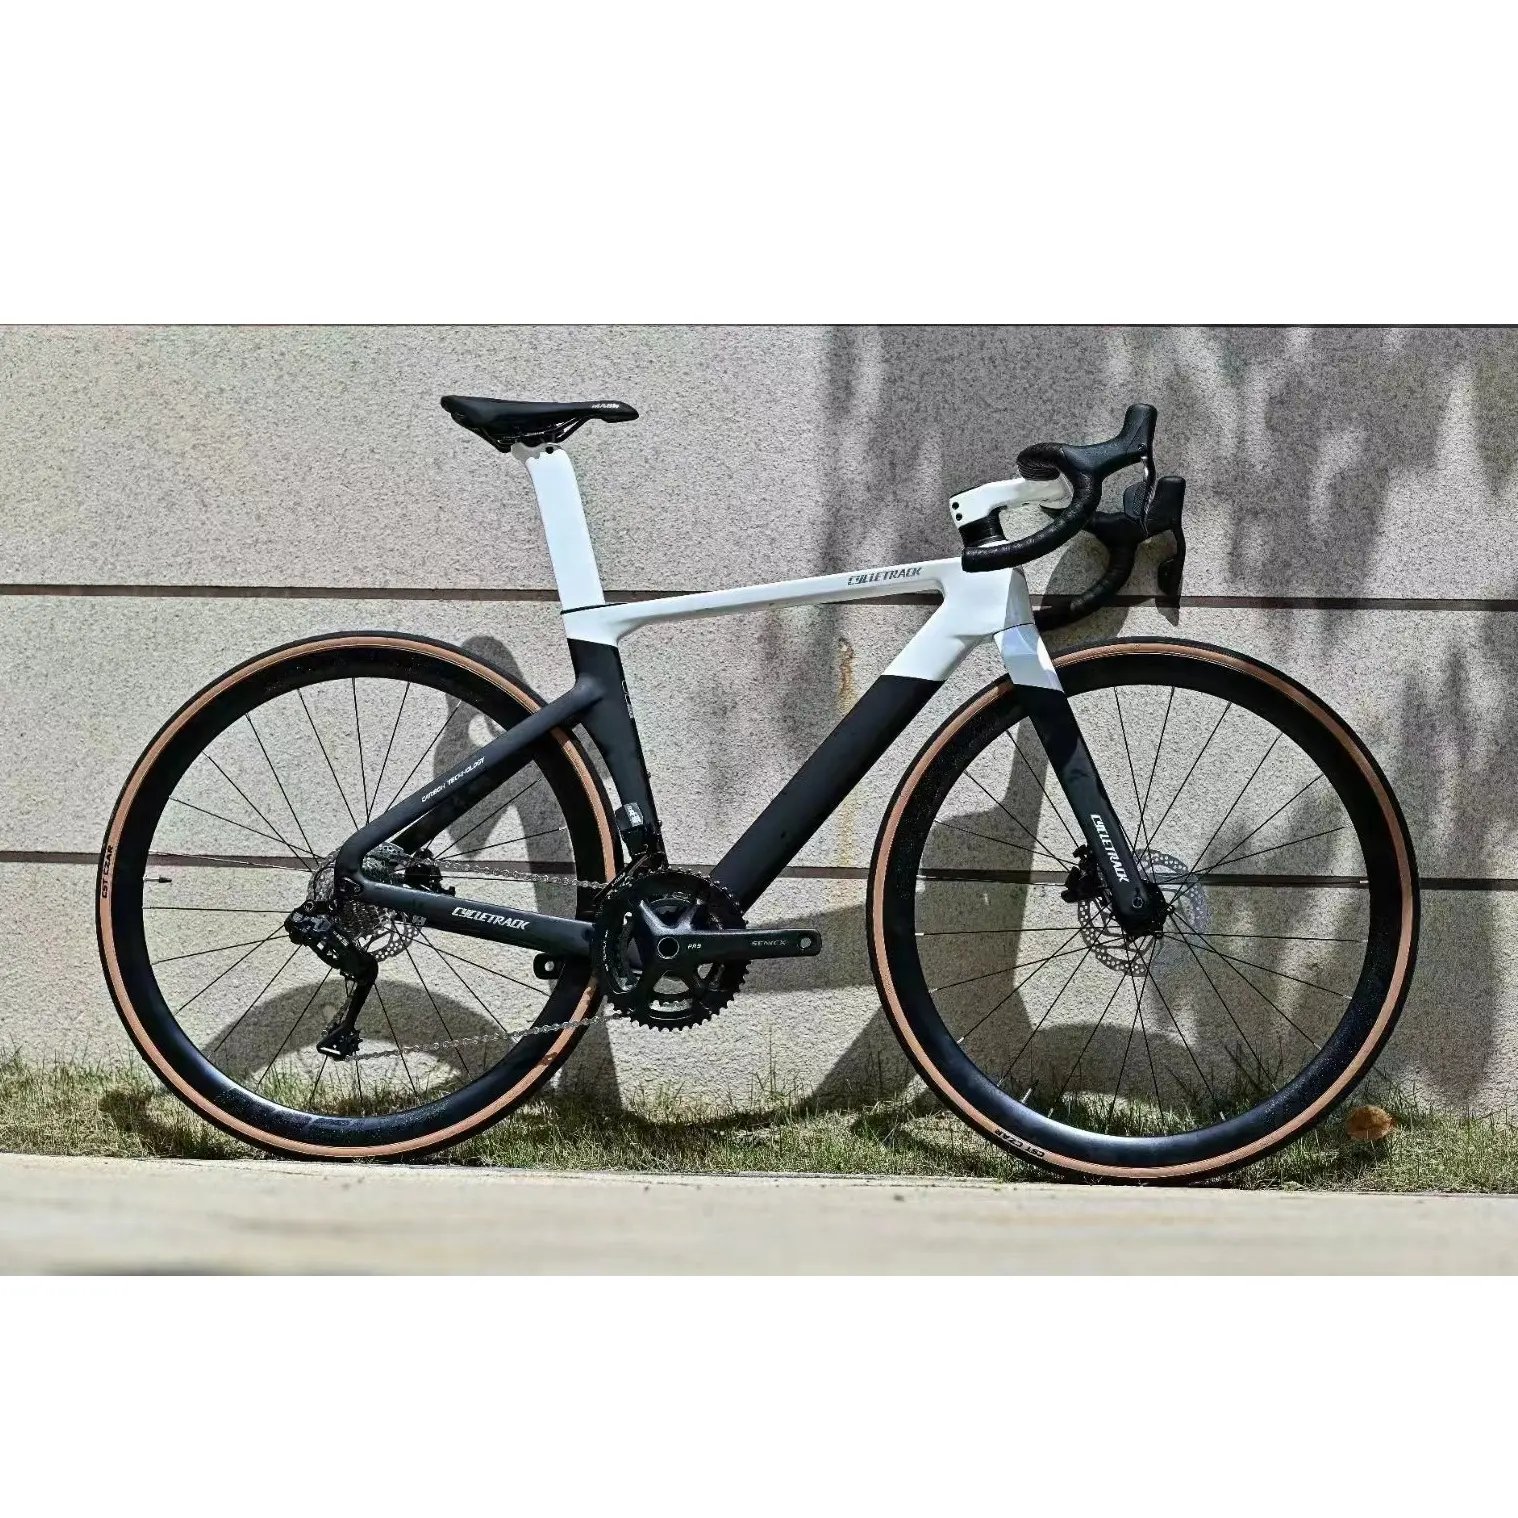 จักรยาน CK-RIVER โรงงานขายส่งแข่งคาร์บอนไฟเบอร์จักรยานอิเล็กทรอนิกส์ EDS คาร์บอนจักรยานถนนจักรยานพร้อมแผ่นดิสก์ใบพัด